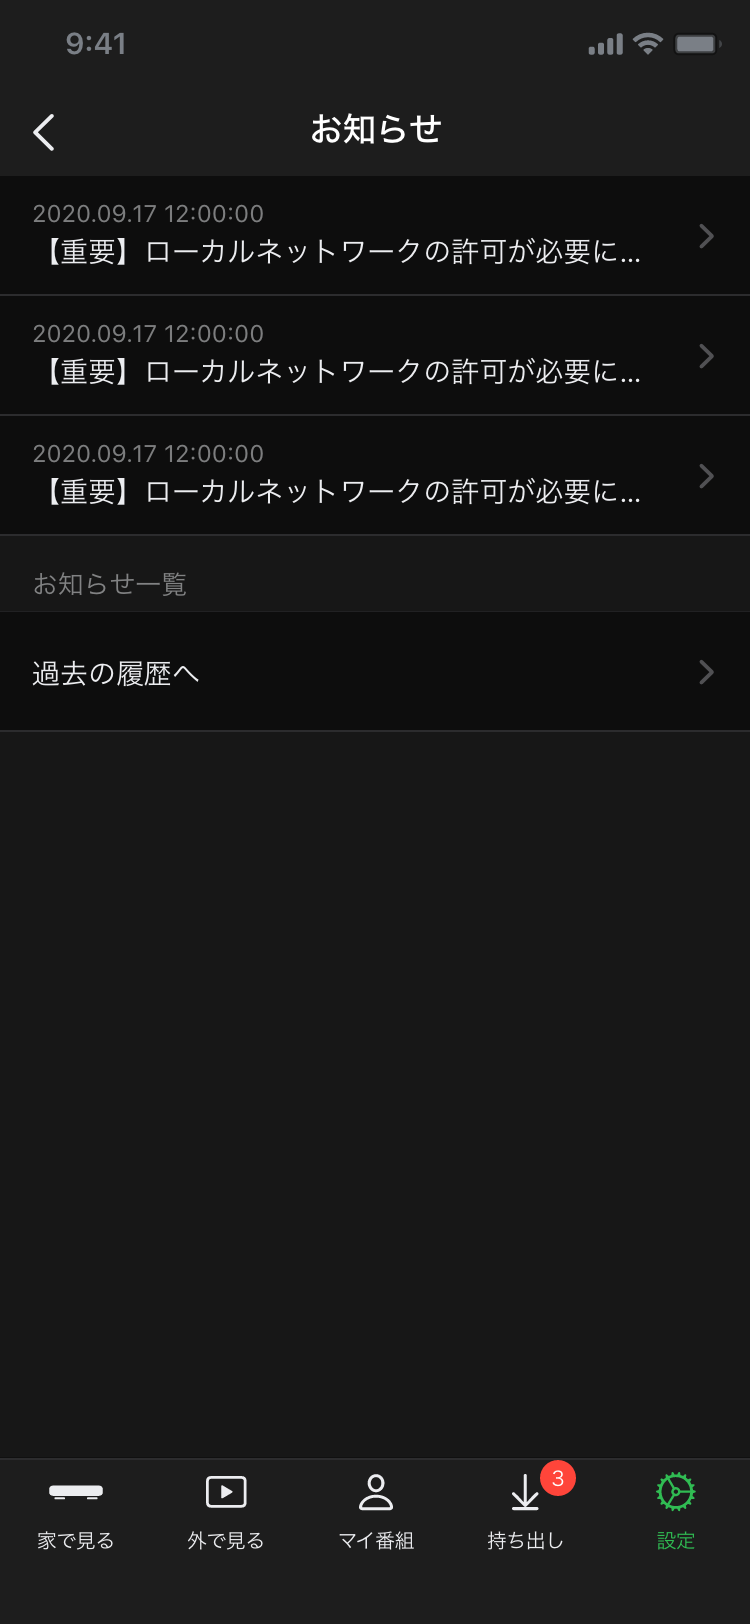 DiXiM Digital TV for iOS お知らせ